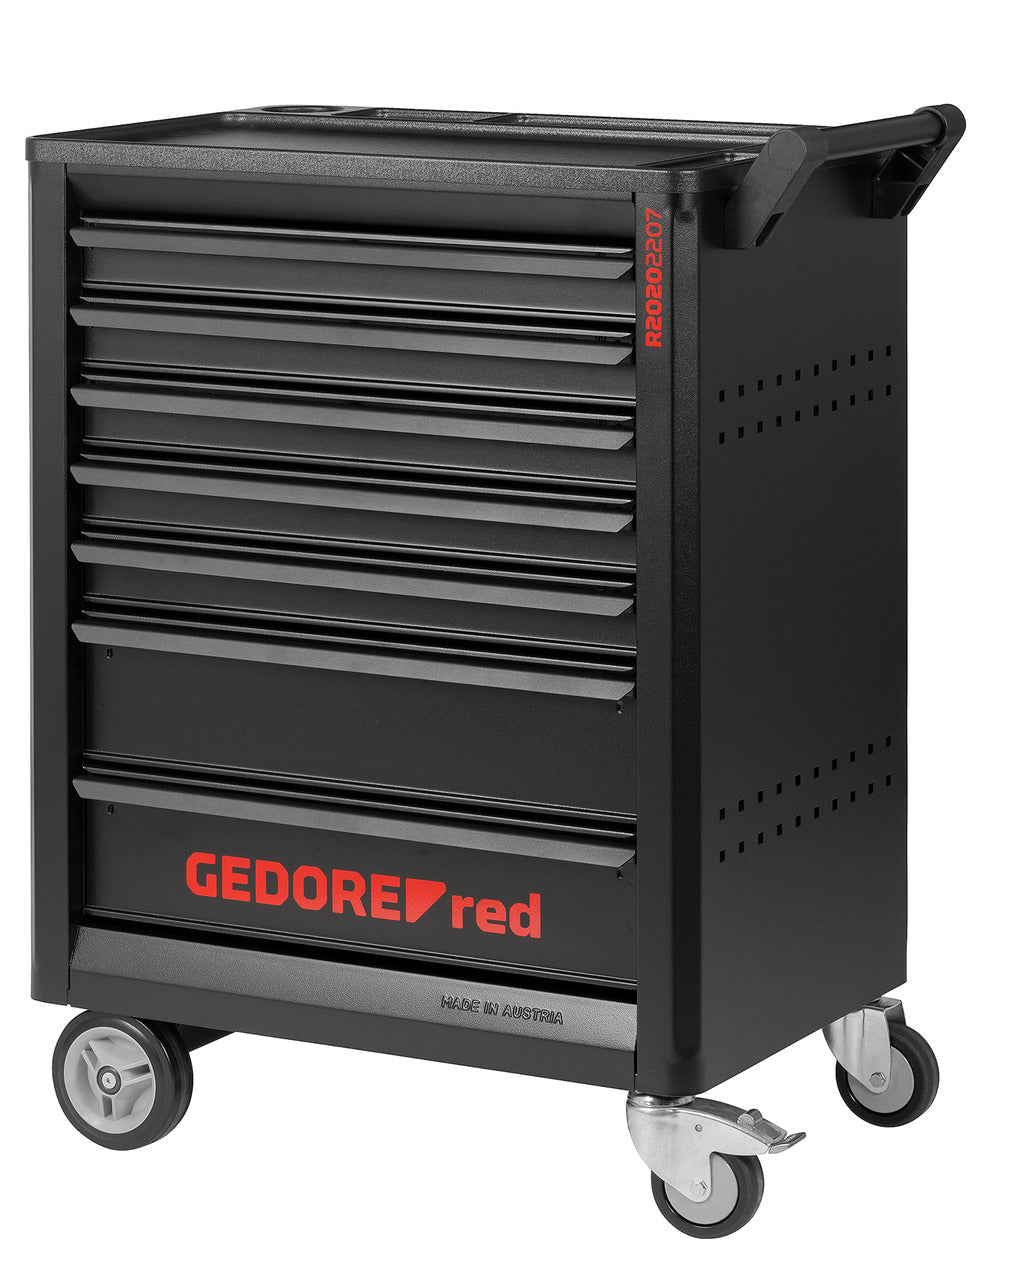 GEDOREred R20202207 - Carro de taller GEDMaster 7 cajones (3301677)